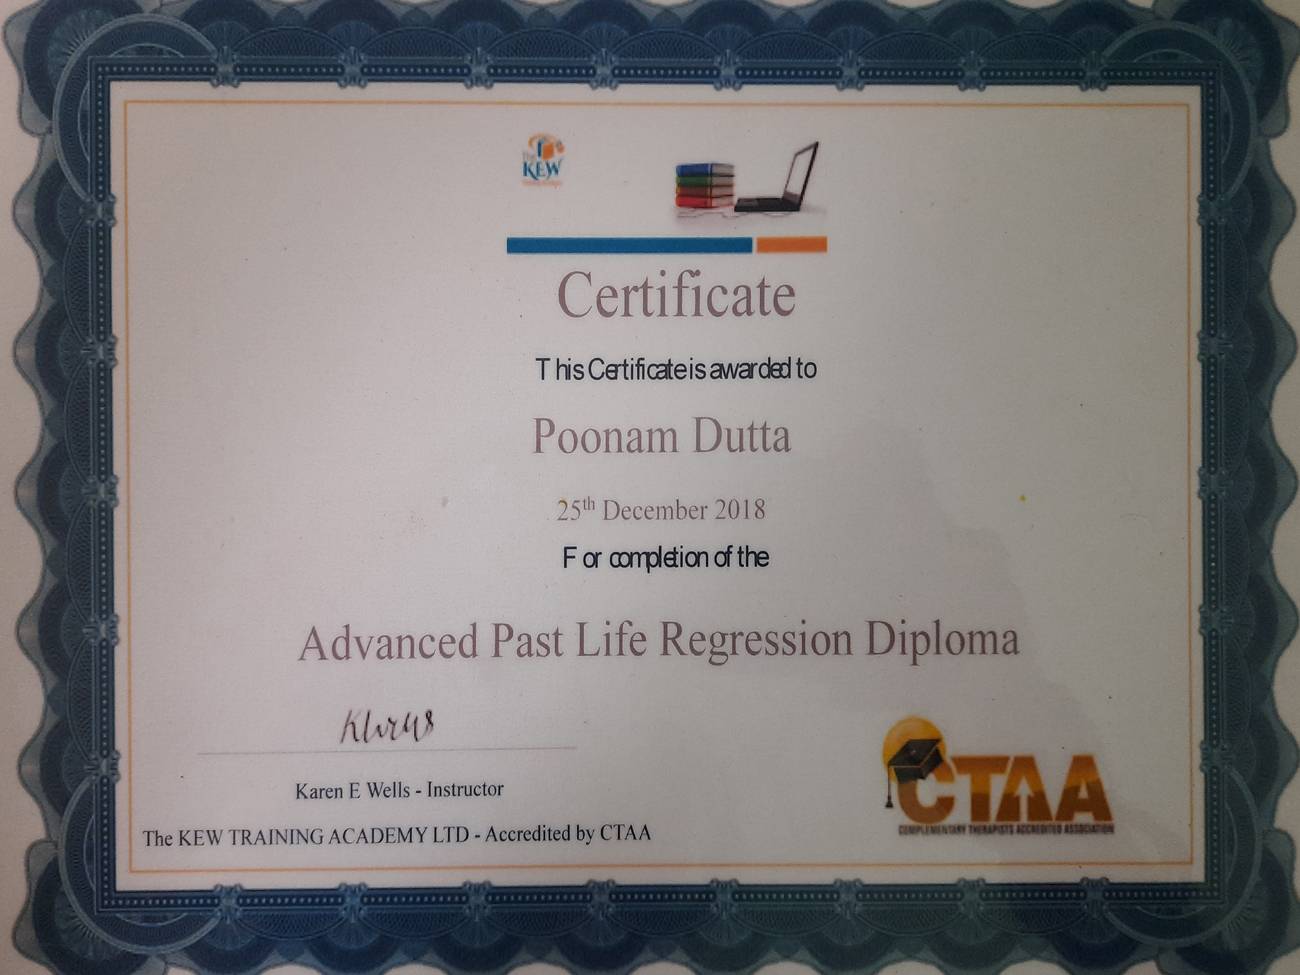 Poonam Dutta advancesd past life regression diploma